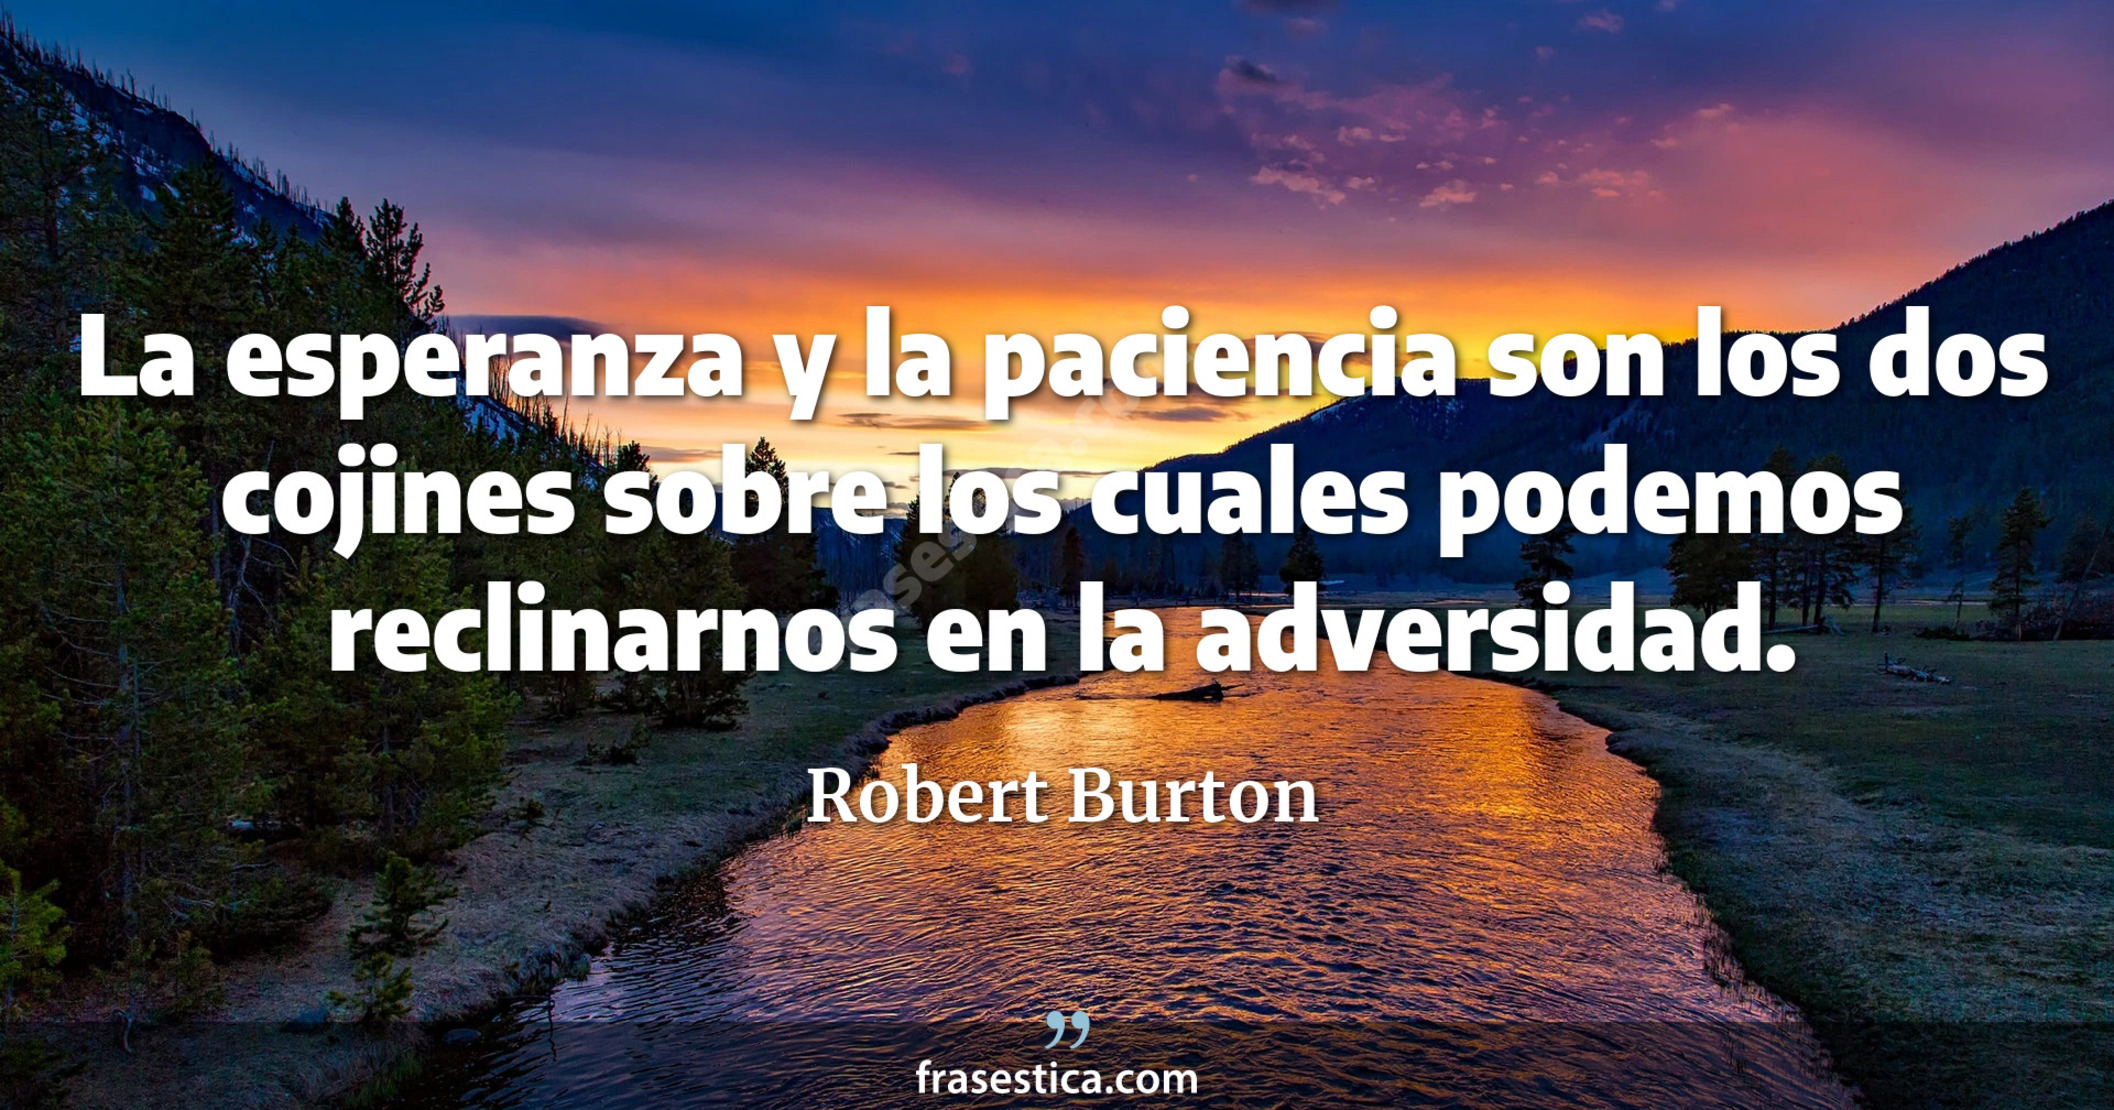 La esperanza y la paciencia son los dos cojines sobre los cuales podemos reclinarnos en la adversidad. - Robert Burton